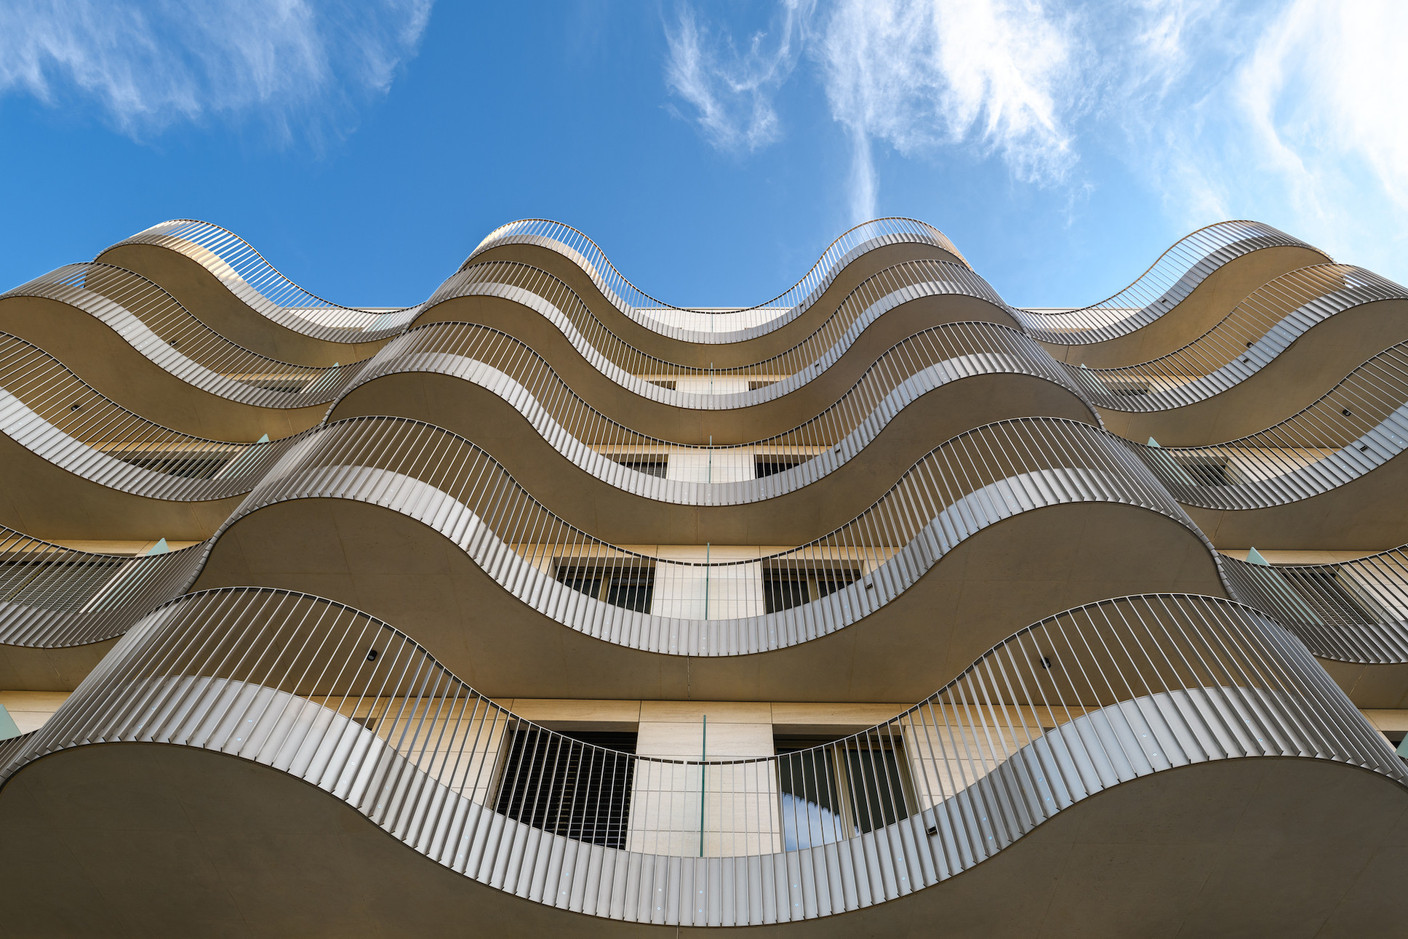 Les balcons se développent selon des lignes ondulantes. (Photo: Julien Swol)